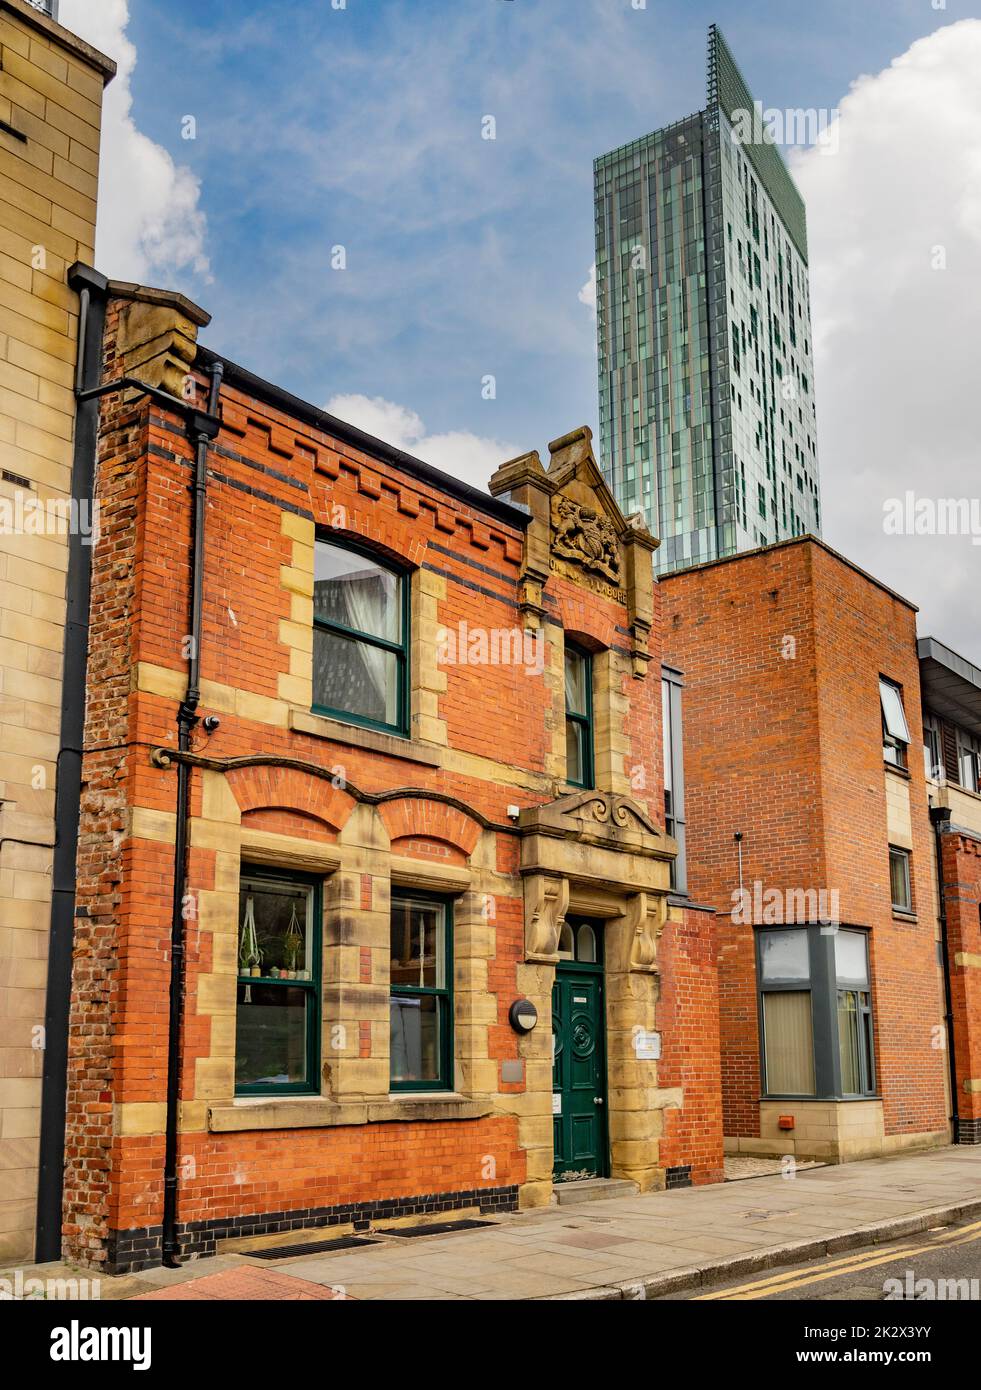 Appartements victoriens sur Bridgewater Street avec la Tour moderne de Beetdam au loin. Manchester. ROYAUME-UNI. Banque D'Images